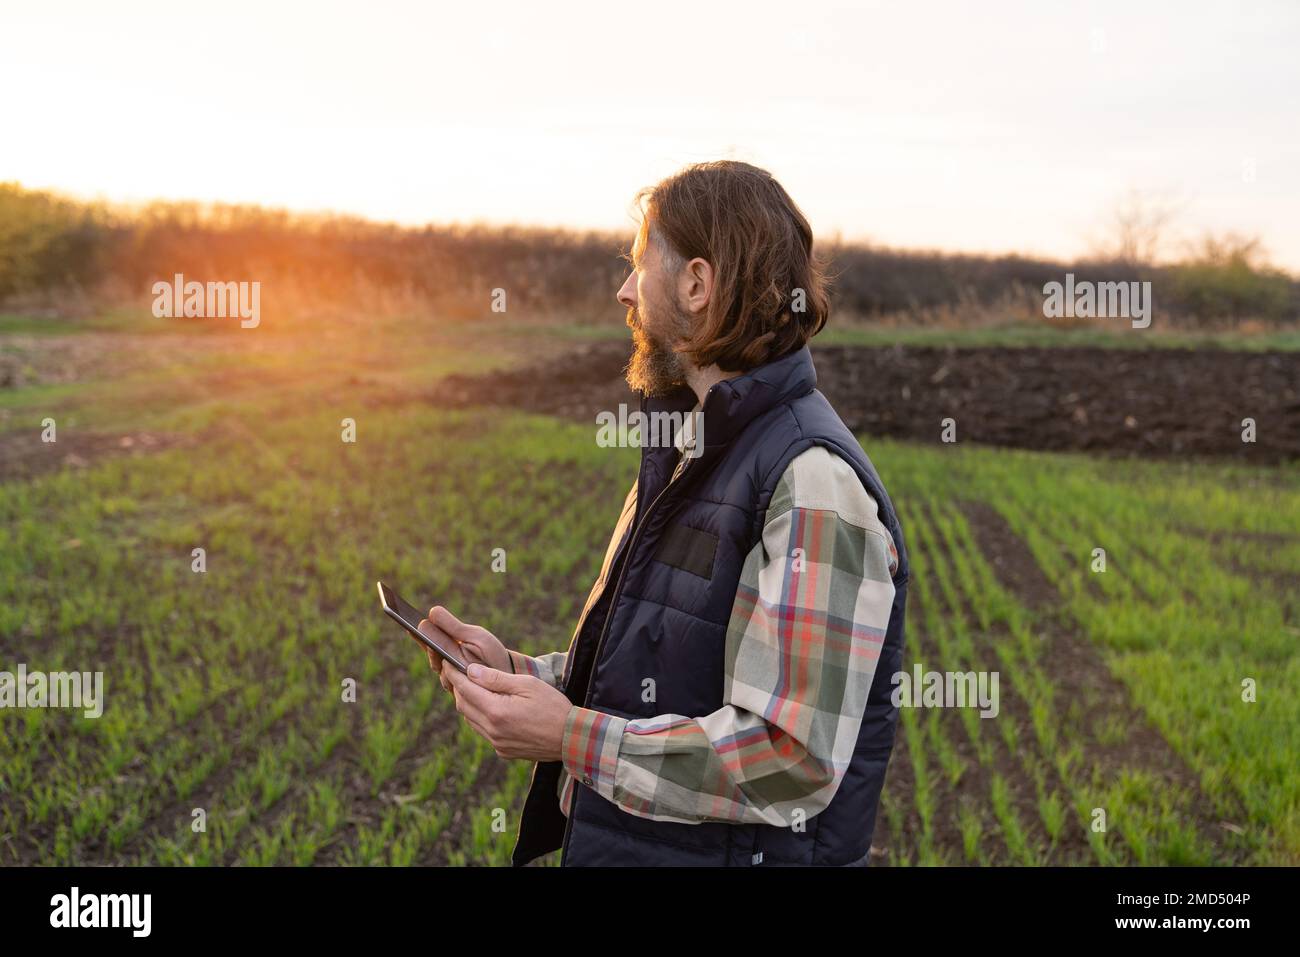 Agriculteur avec une tablette numérique sur un terrain. Agriculture intelligente et agriculture numérique Banque D'Images